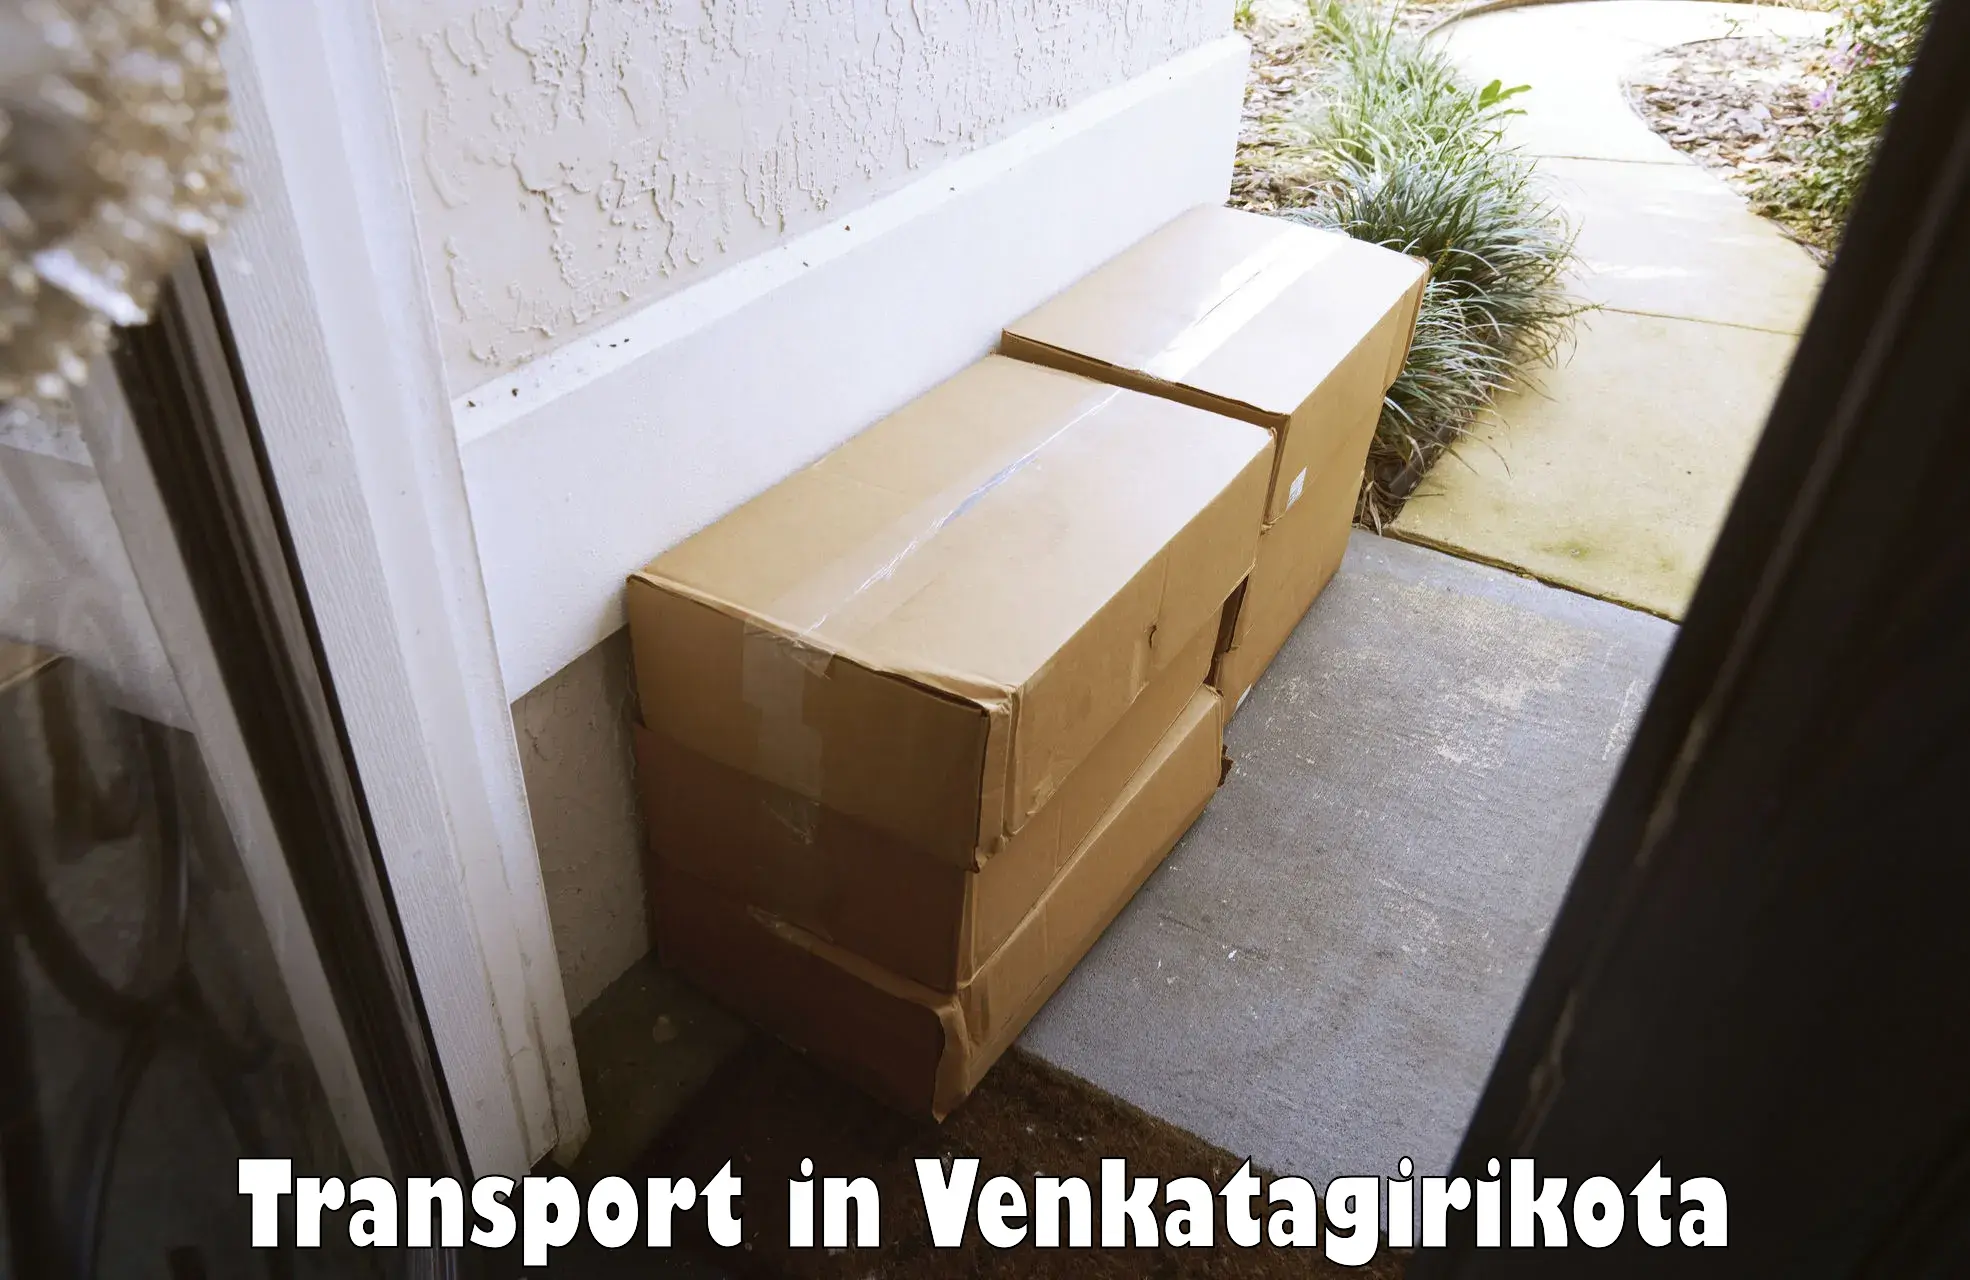 Domestic transport services in Venkatagirikota